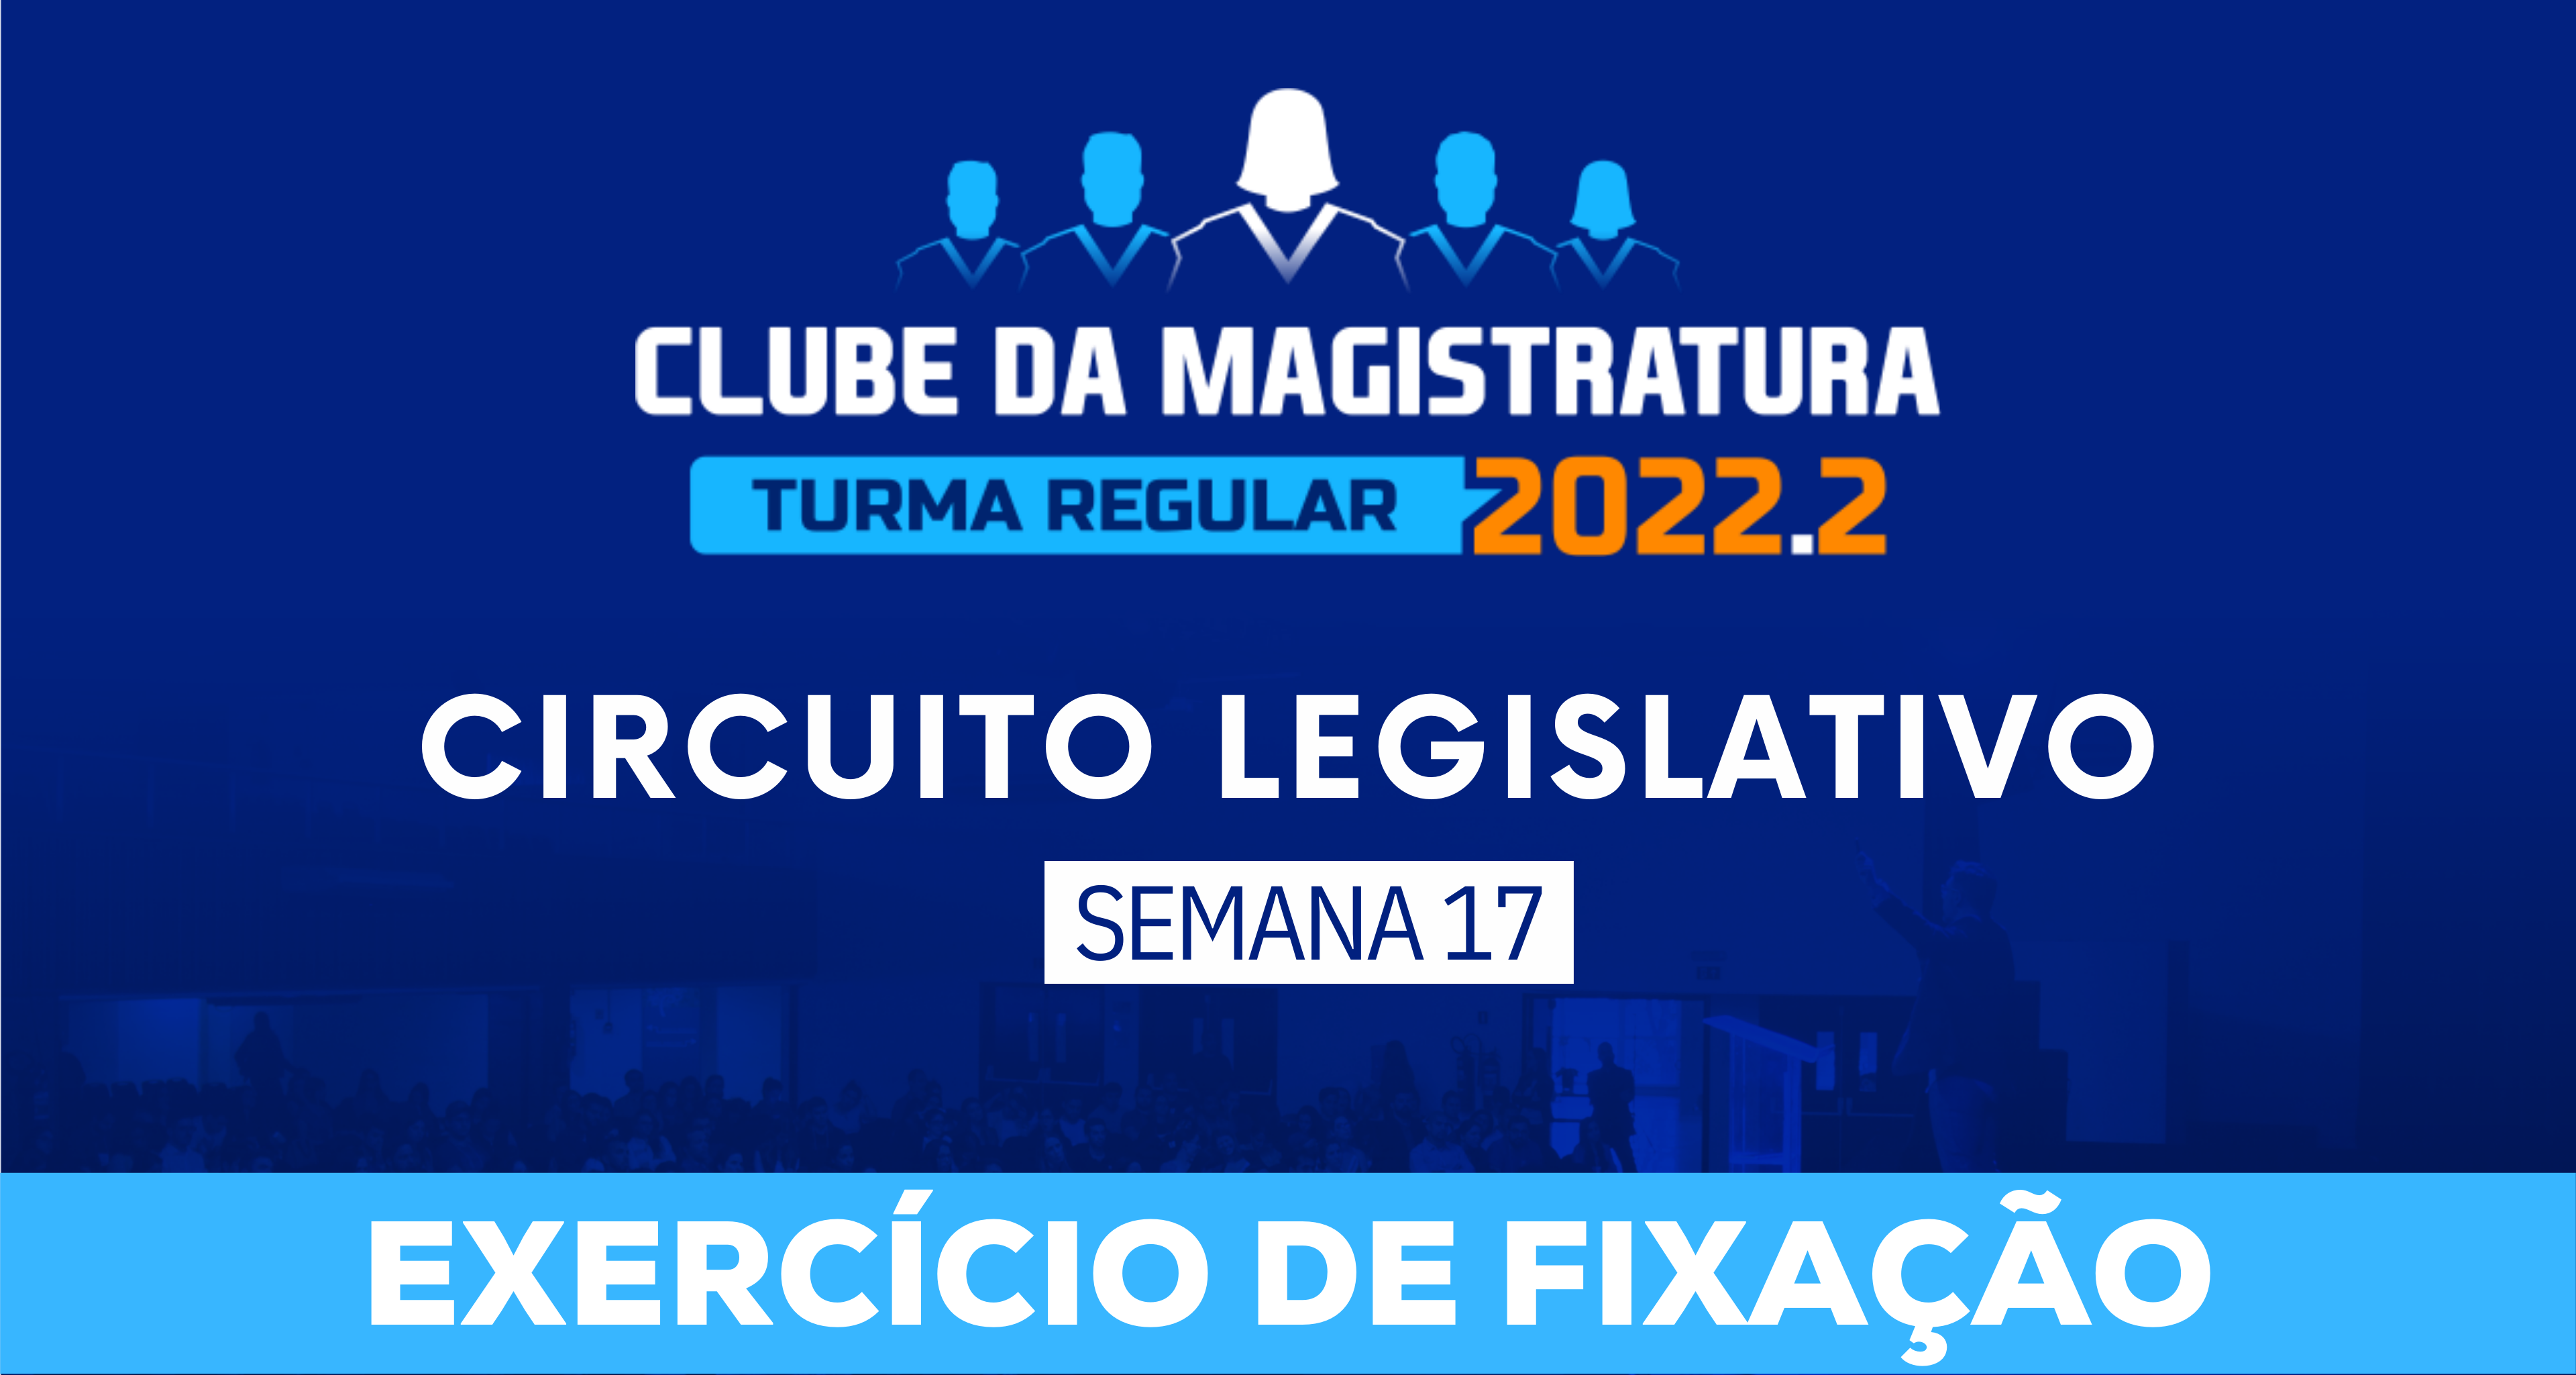 Circuito Legislativo 2022.2 (Clube da Magistratura - Semana 17)